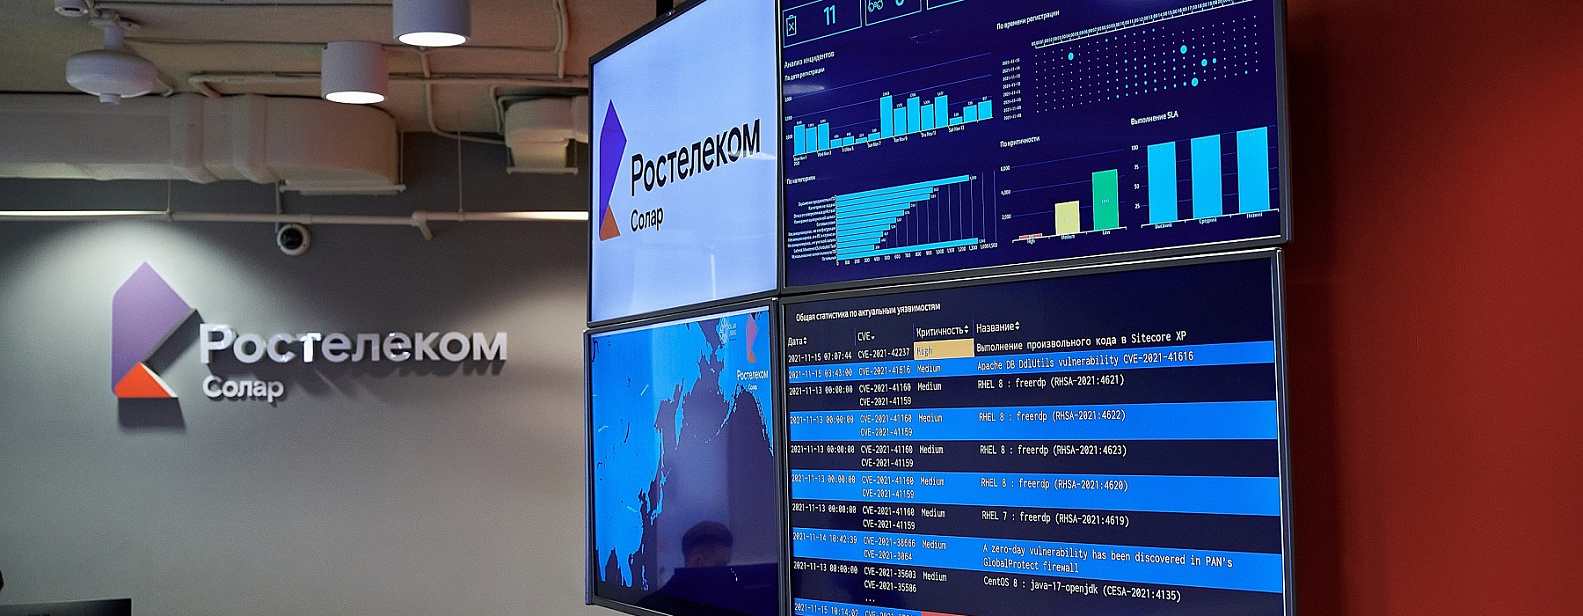 «Ростелеком-Солар» открыл в Ростове-на-Дону центр противодействия кибератакам 